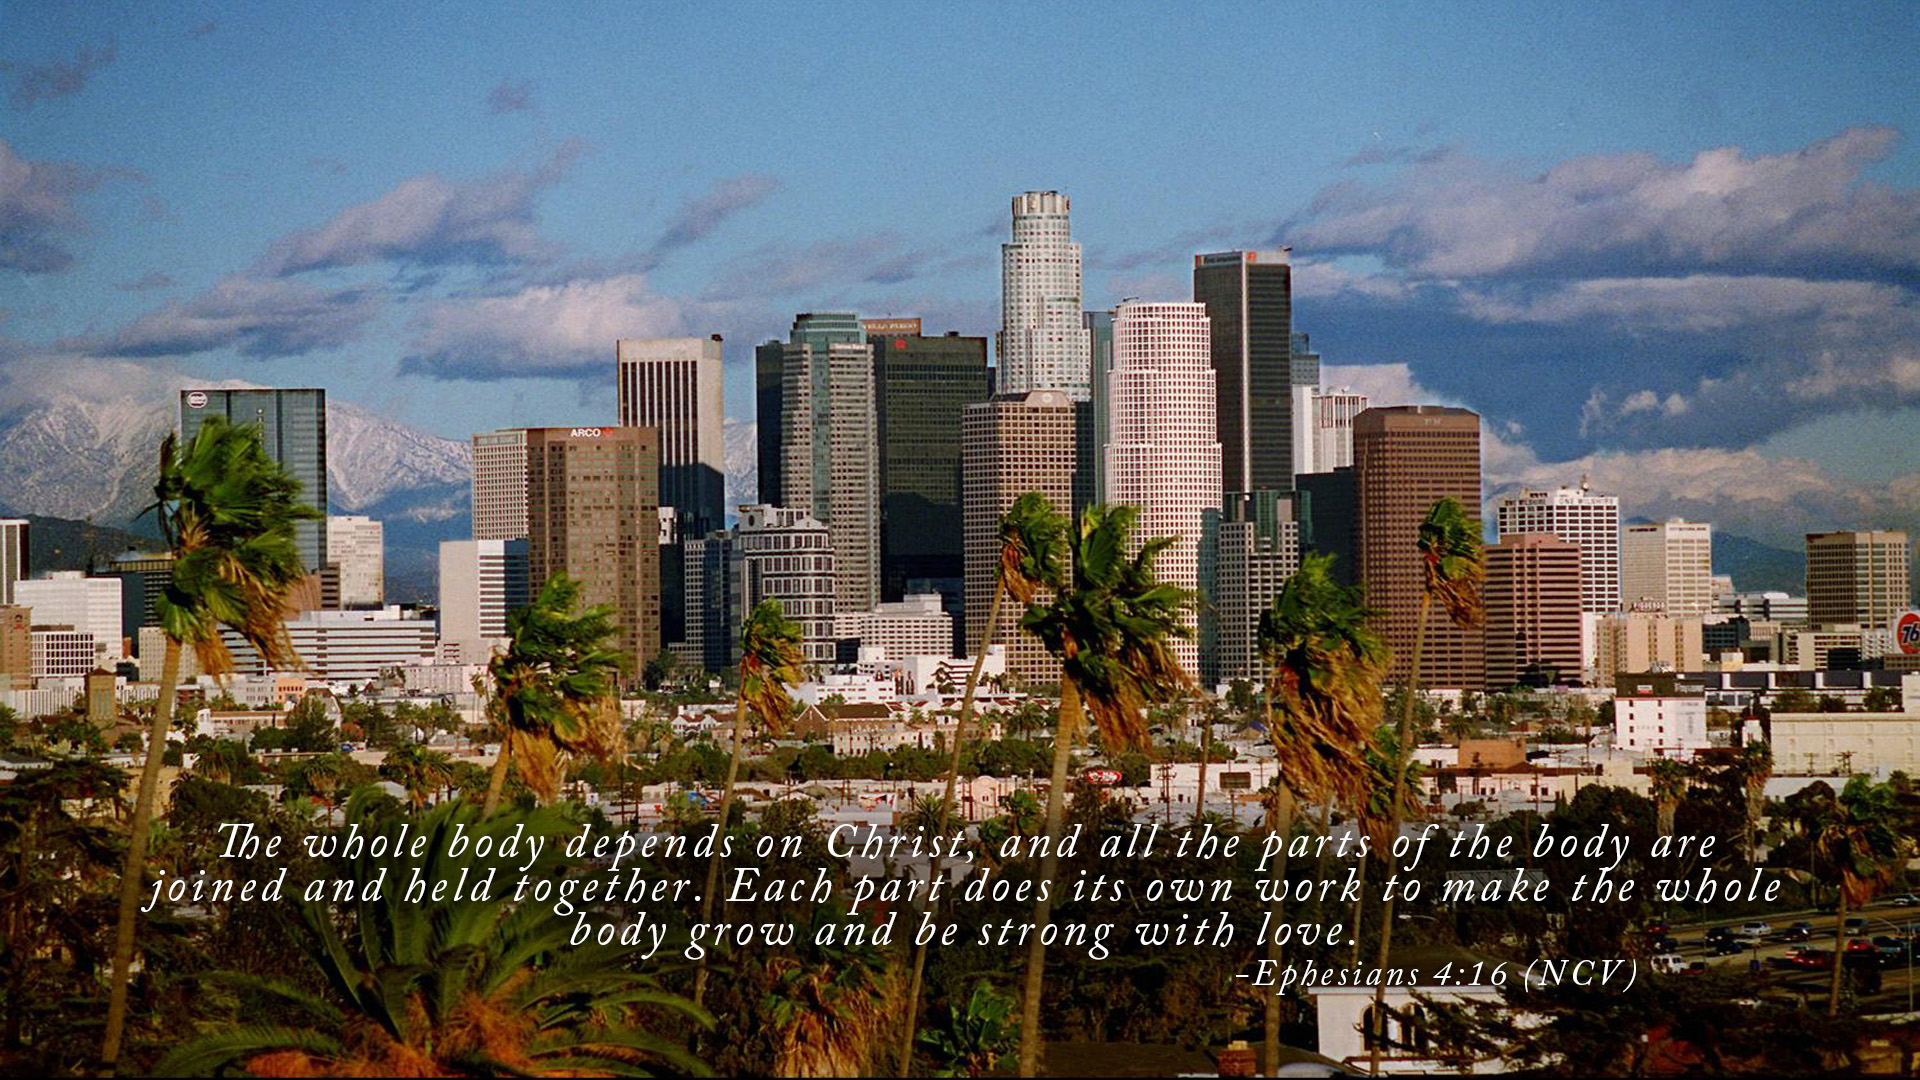 Los Angeles.jpg